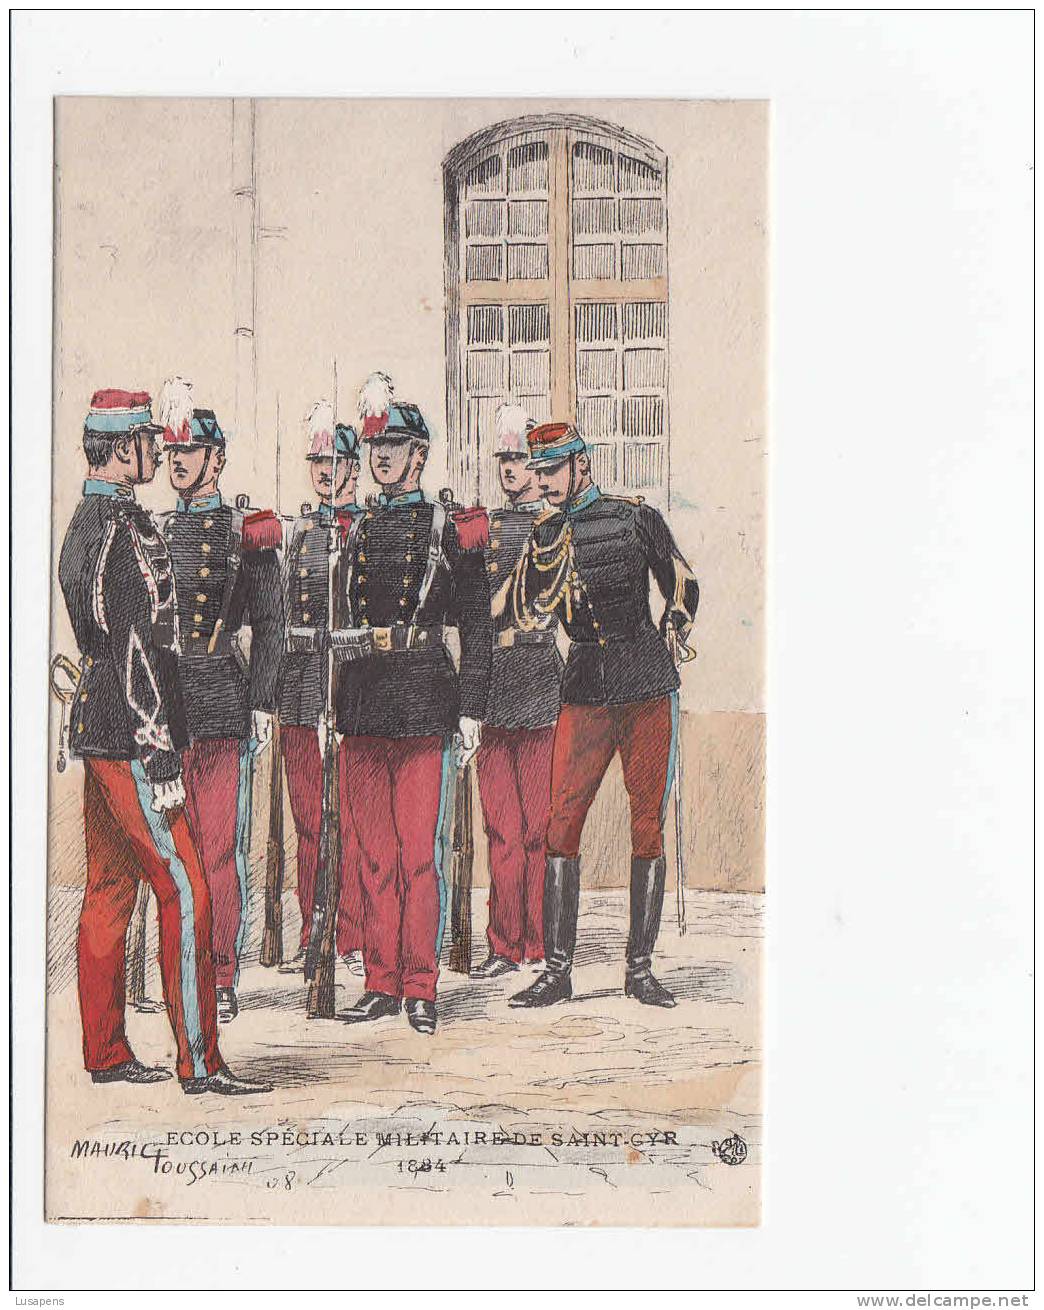 OF 6948 - Illustrateur: MAURICE FOUSSAINT- ECOLE SPÉCIALE MILITAIRE DE SAINT GYR - 1884 - Uniforms